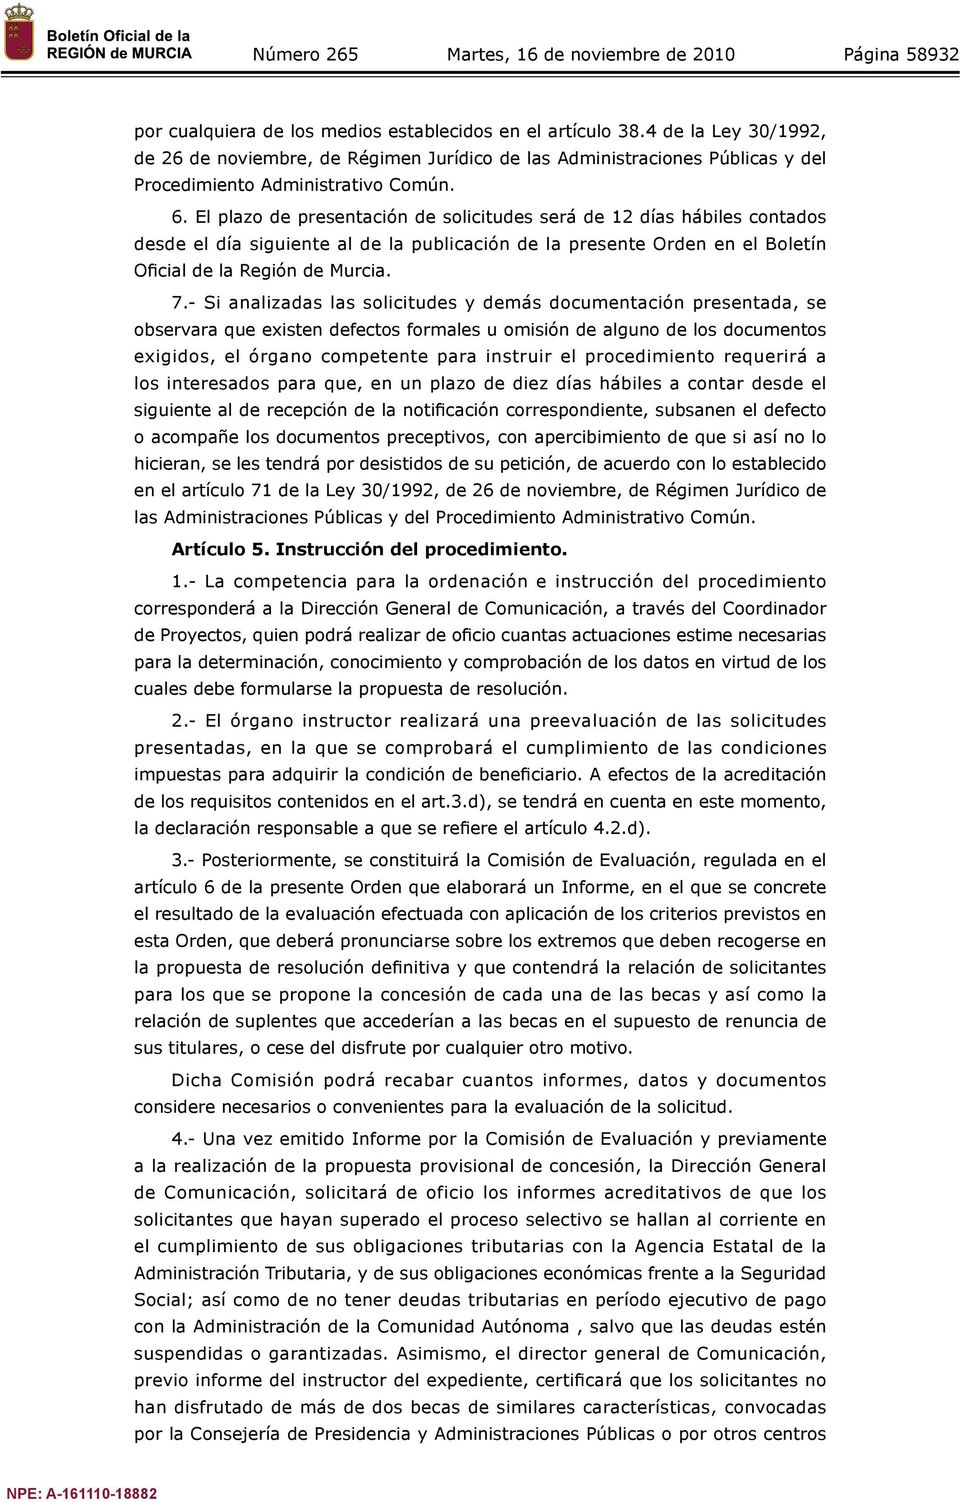 El plazo de presentación de solicitudes será de 12 días hábiles contados desde el día siguiente al de la publicación de la presente Orden en el Boletín Oficial de la Región de Murcia. 7.